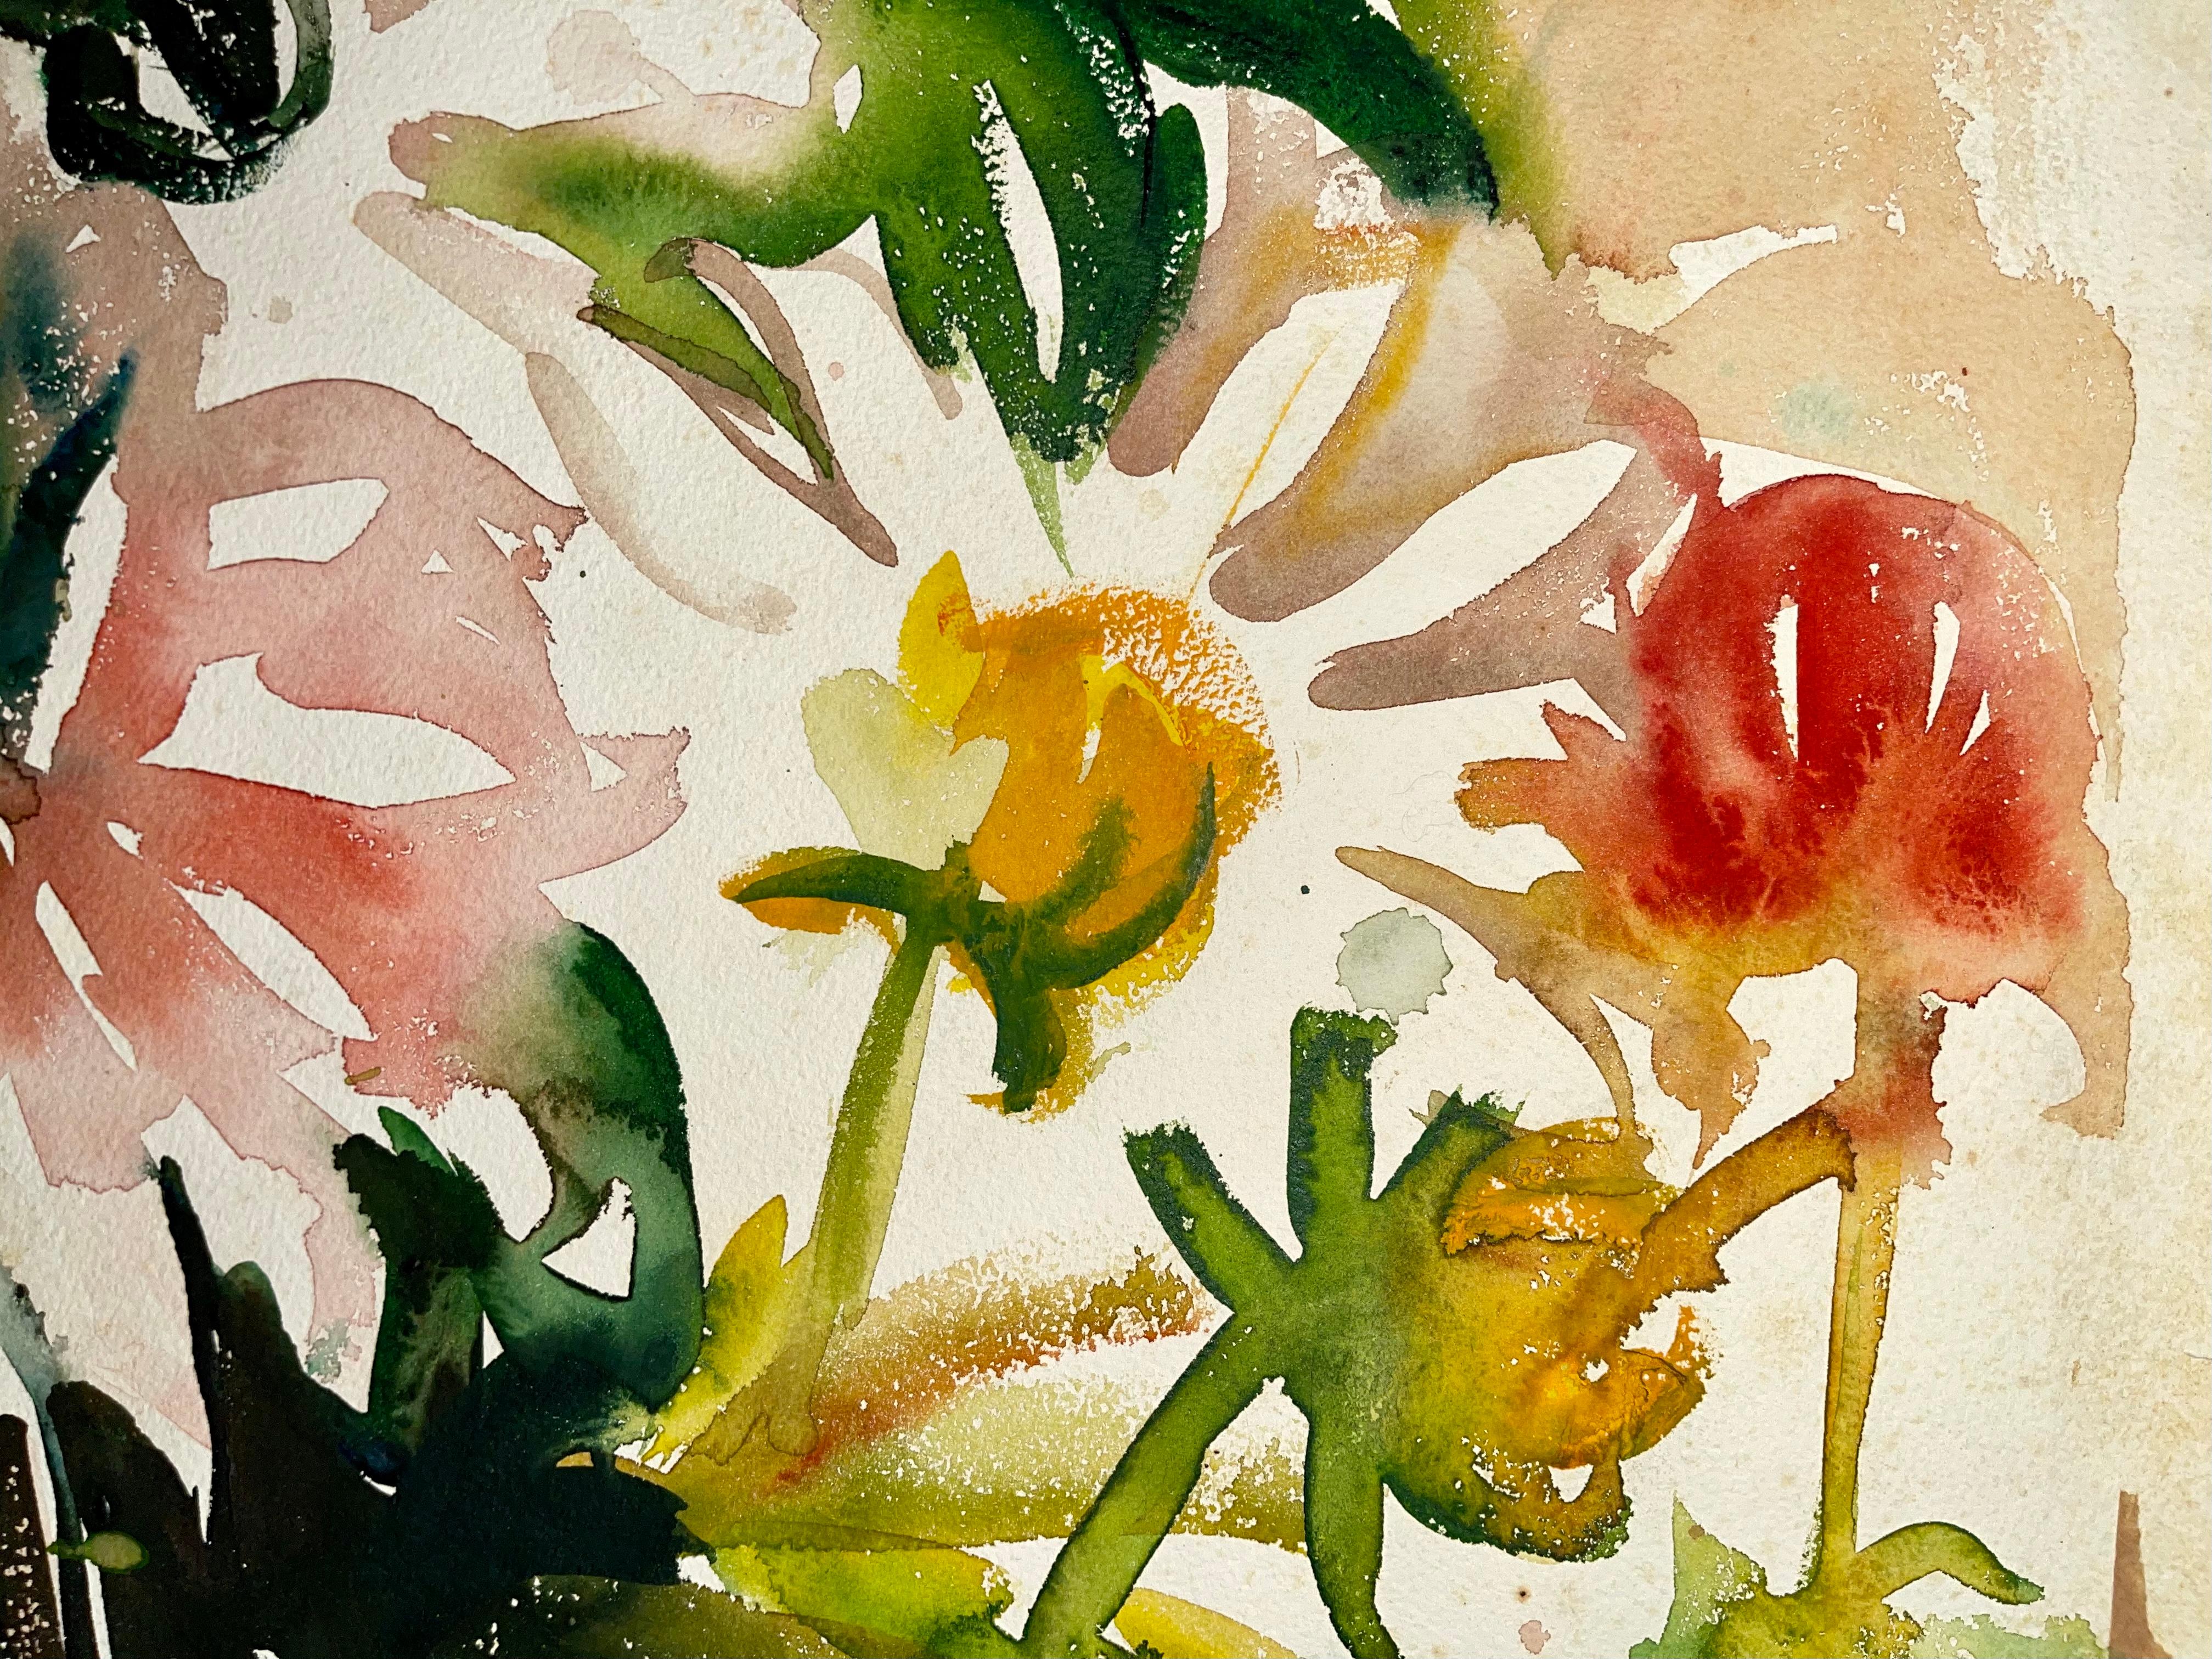 Artiste : Ian Hornak (1944-2002)
Titre : Sans titre (Nature morte abstraite avec fleurs)
Année : 1963
Médium : Aquarelle sur papier d'archives épais
Taille : 29.5 x 21 pouces
Condition : Bon
Provenance : Succession de Ian Hornak, East Hampton,